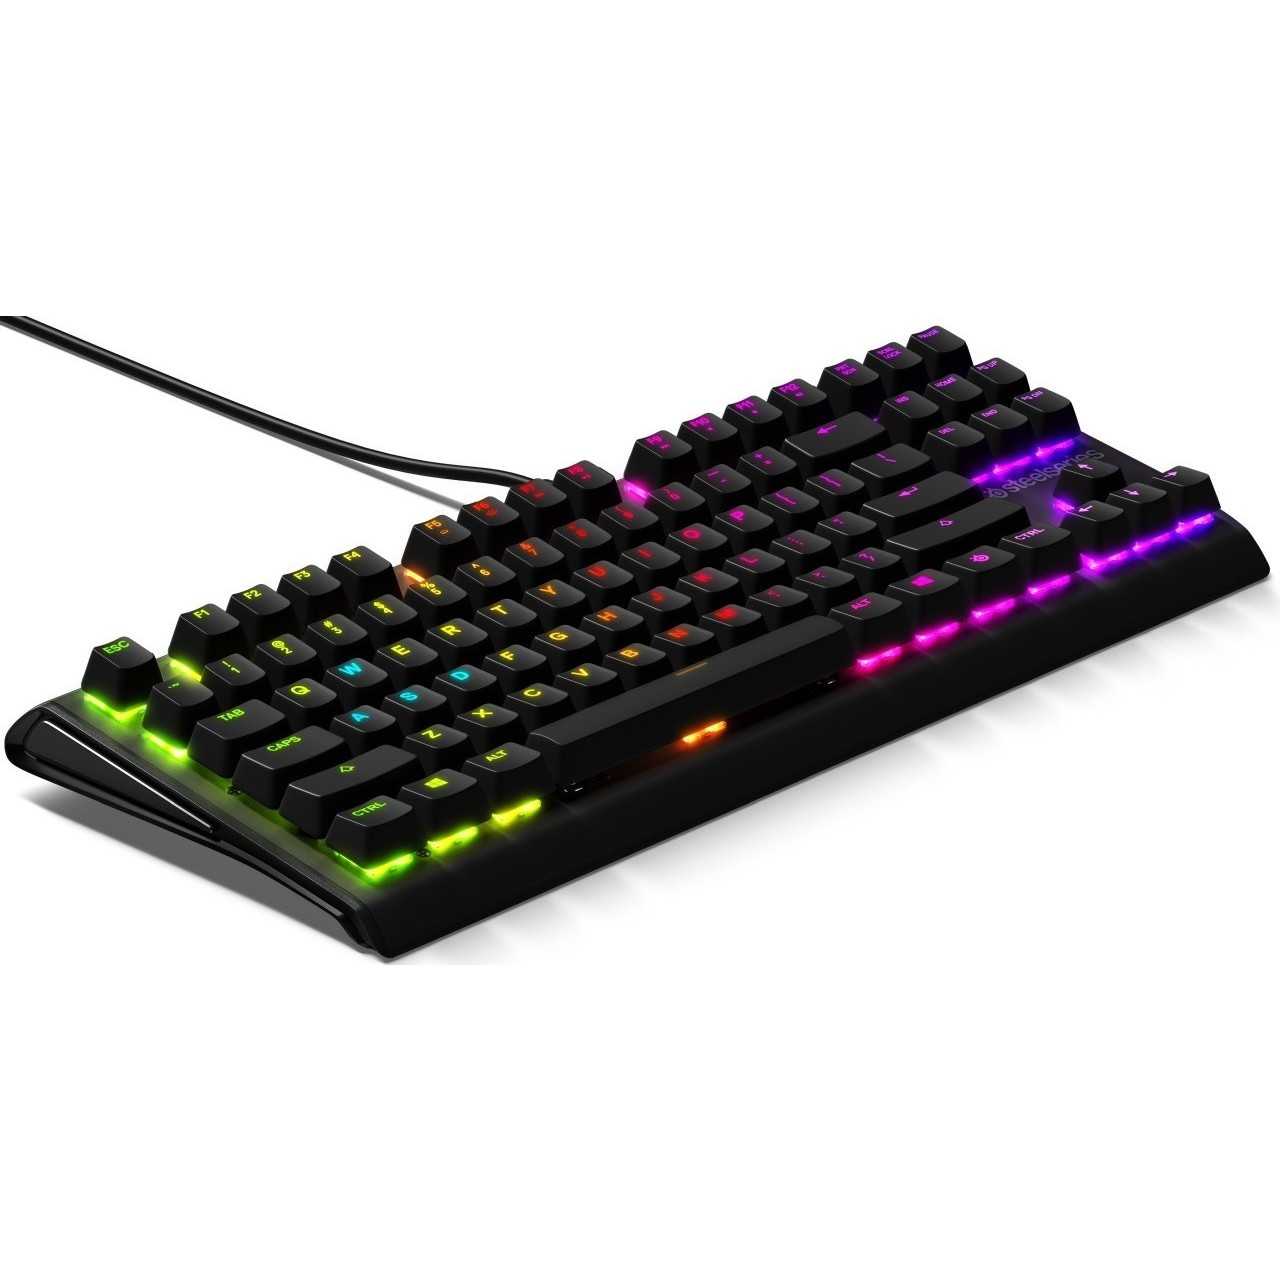 Steelseries apex gaming keyboard black usb